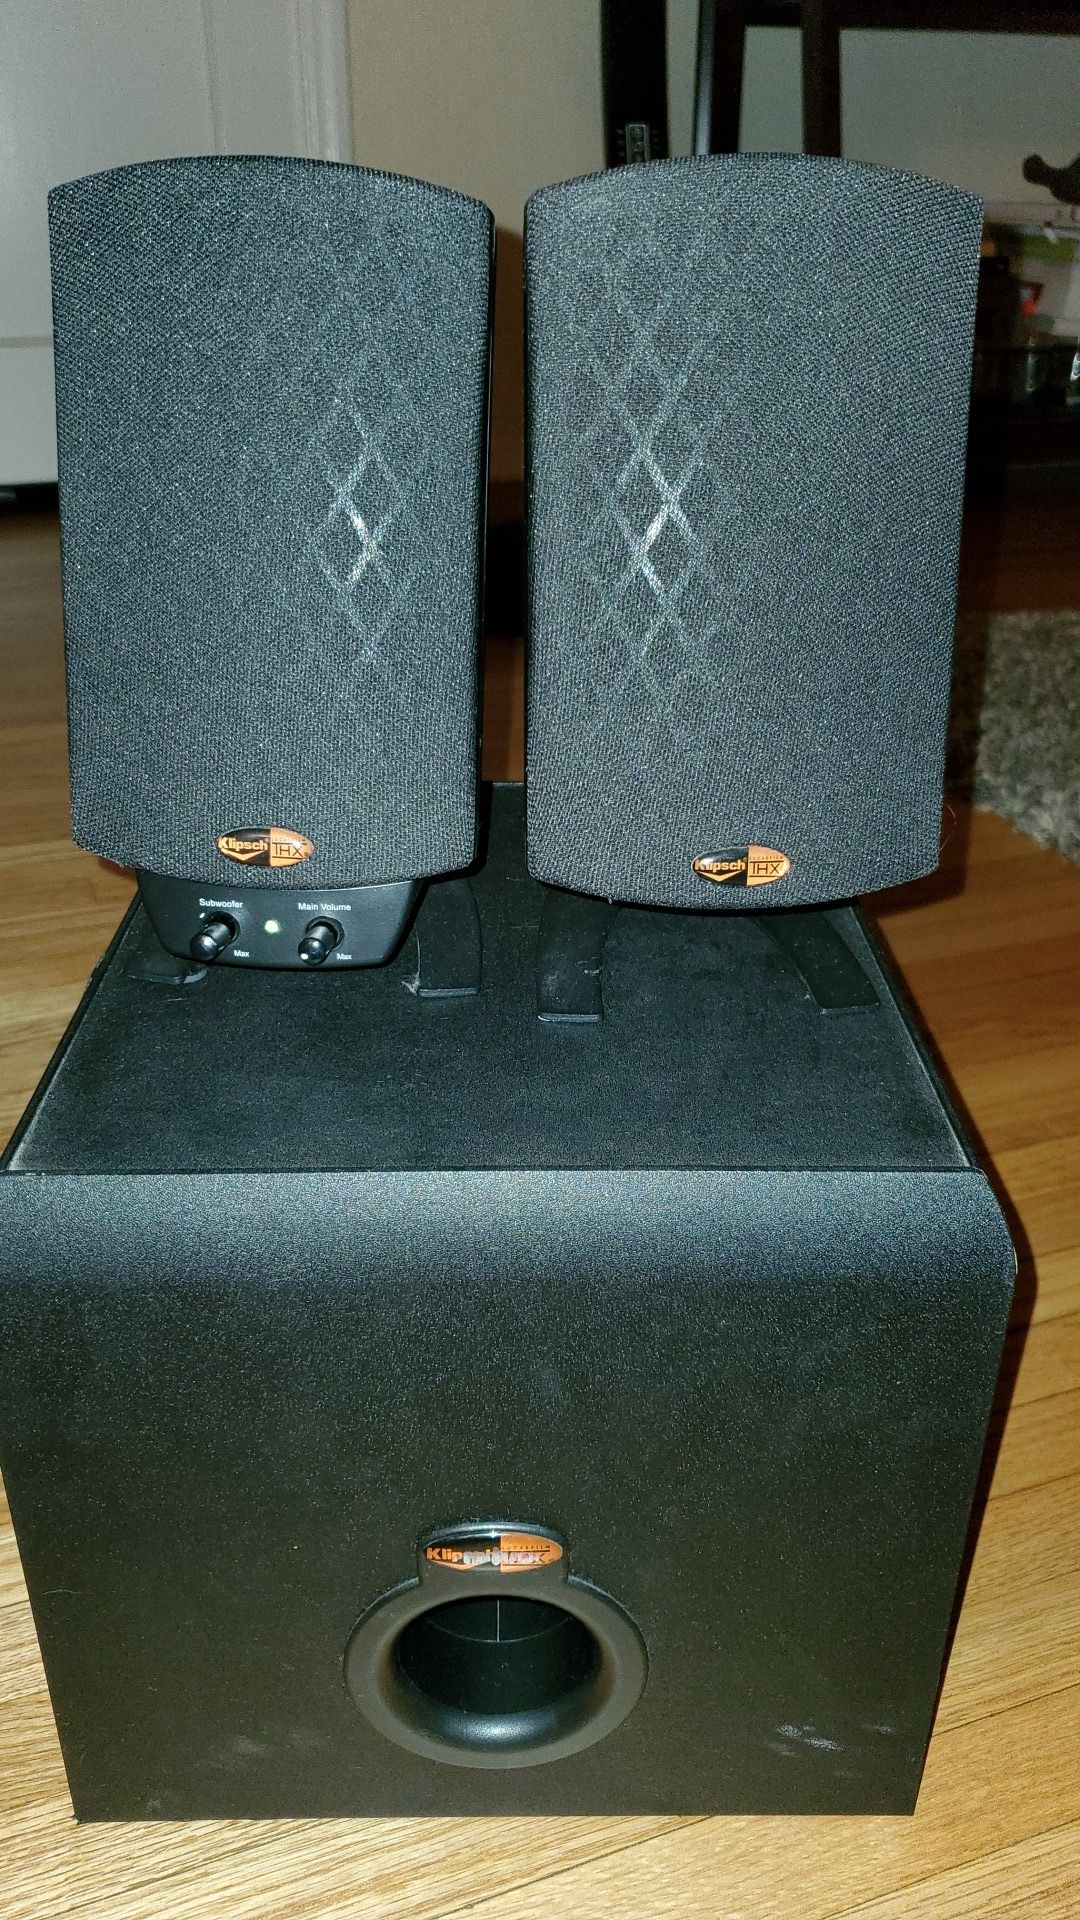 Klipsch Pro Media 2.1 computer speakers